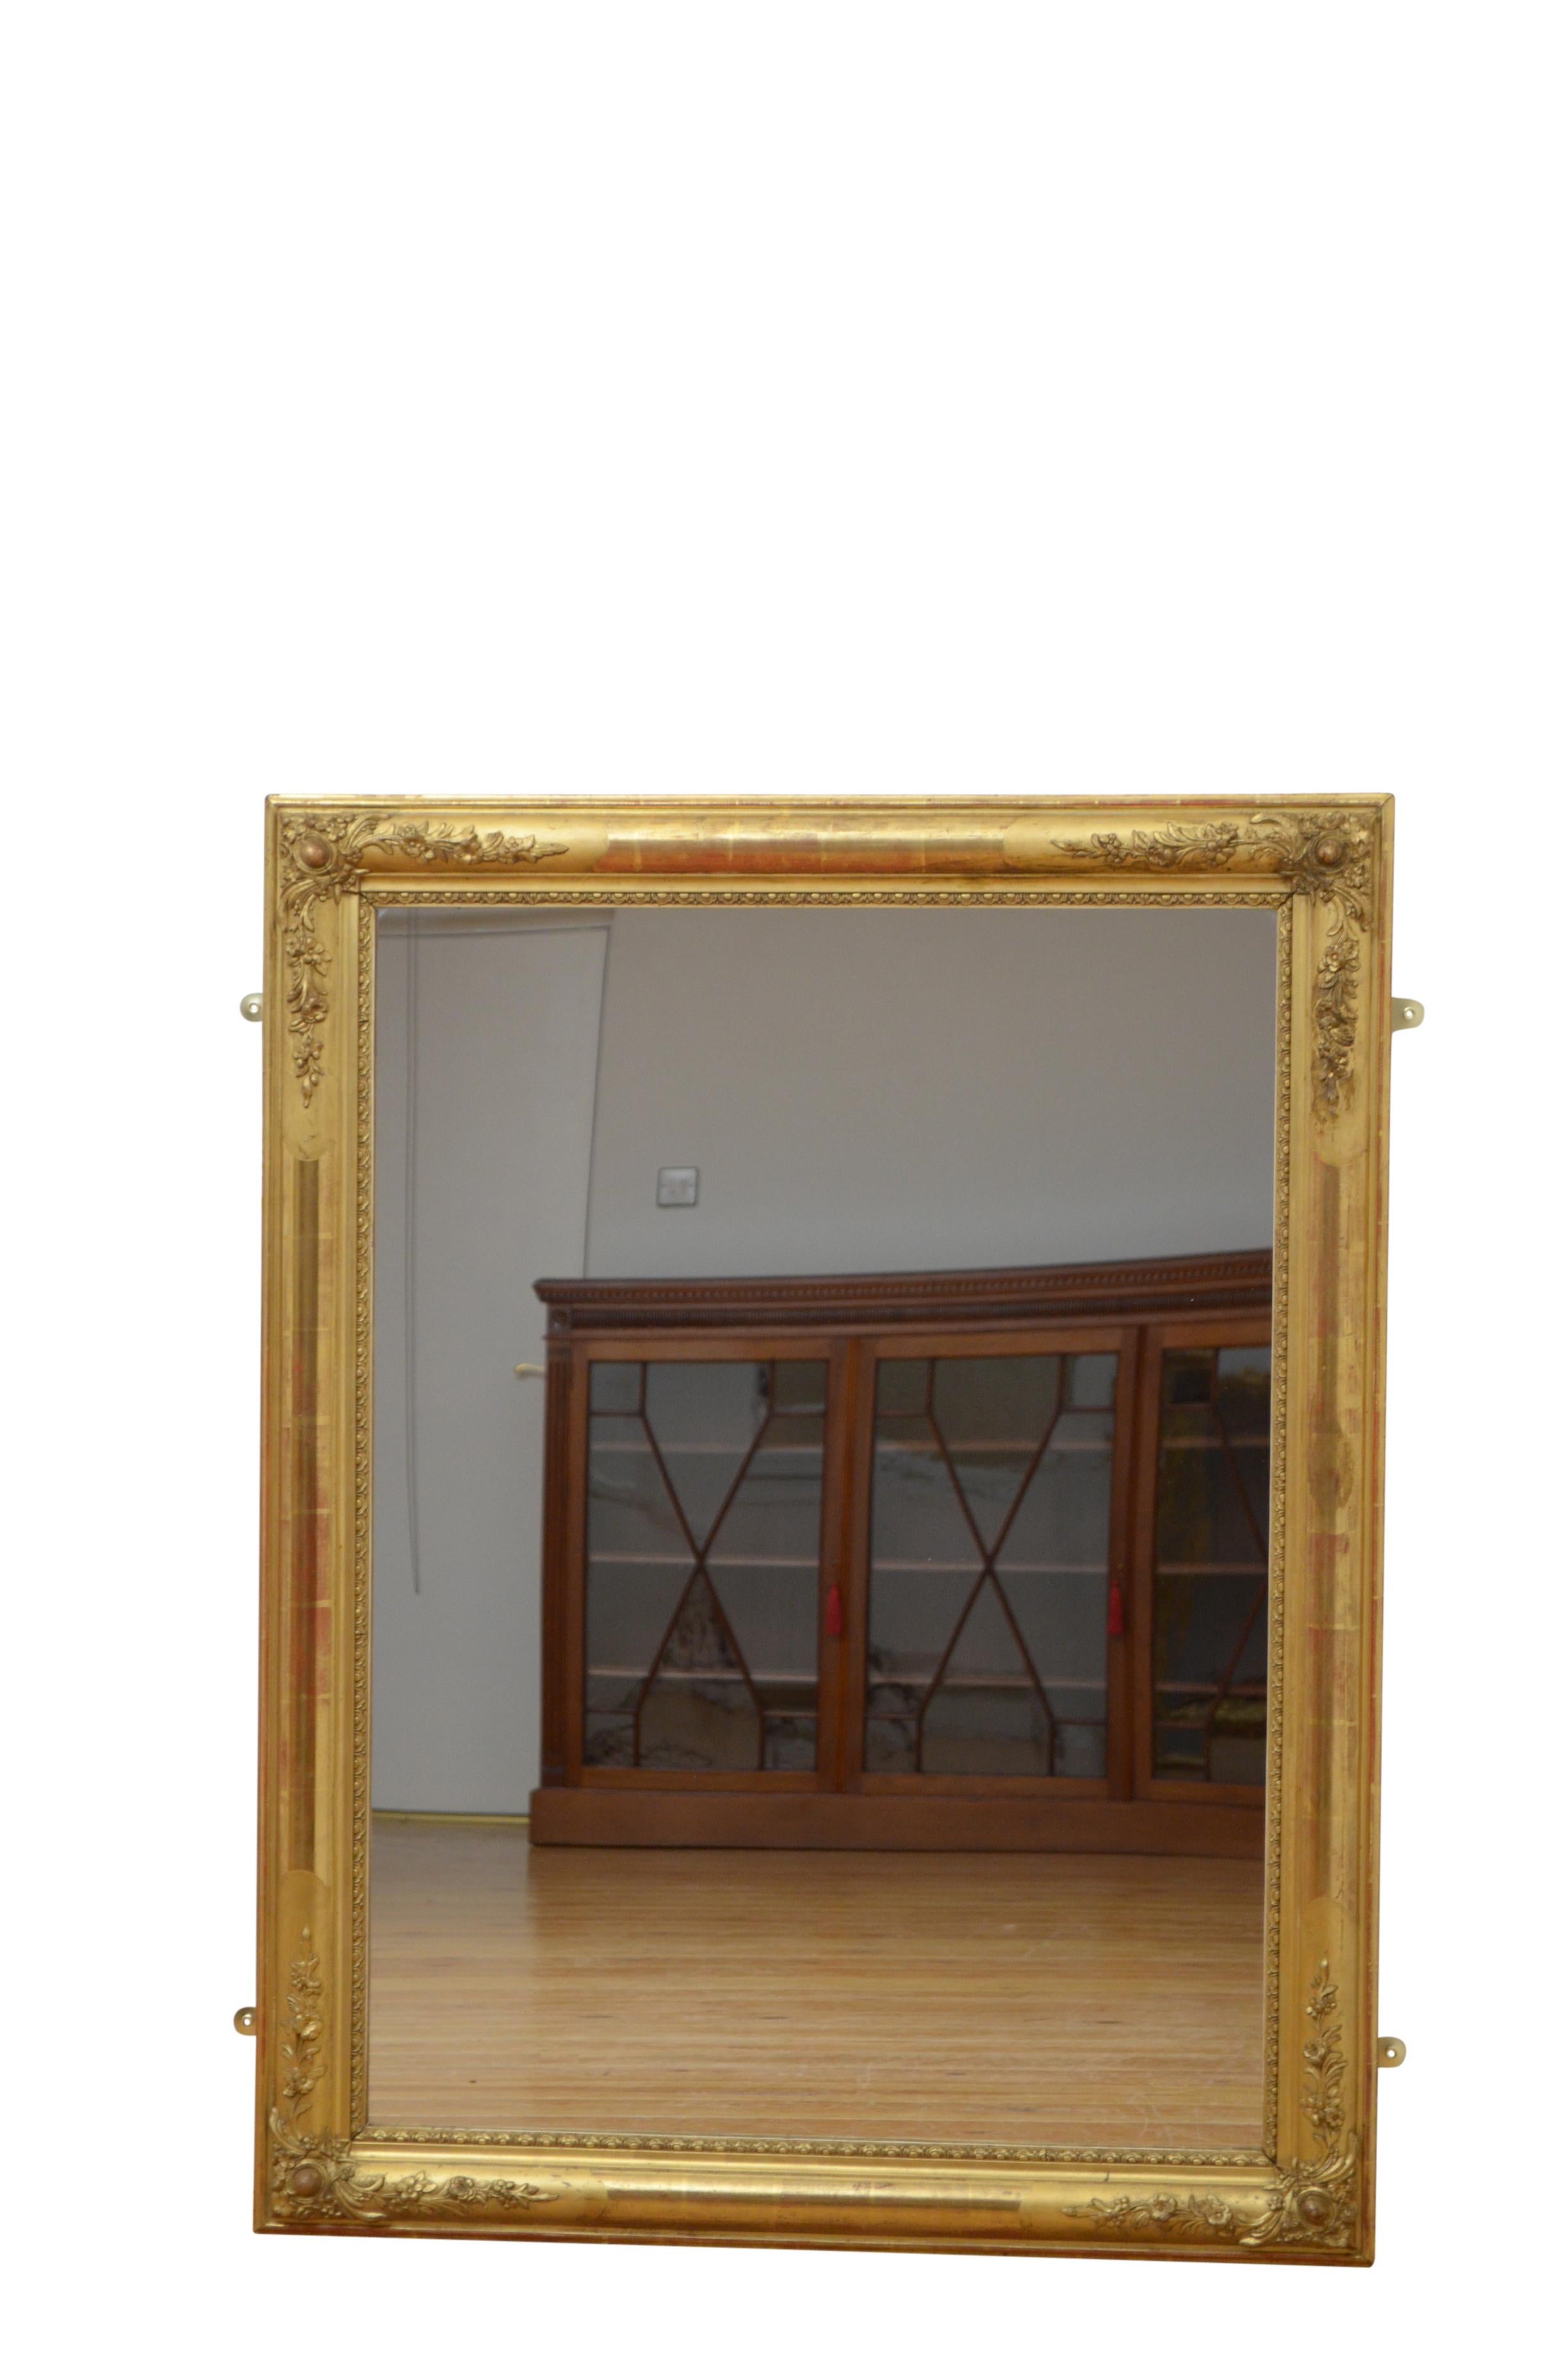 Très attrayant miroir mural en bois doré de forme polyvalente, il peut être suspendu de manière horizontale ou verticale, ayant un verre de remplacement dans un cadre moulé et doré avec des coins décorés de fleurs. Ce miroir ancien conserve sa